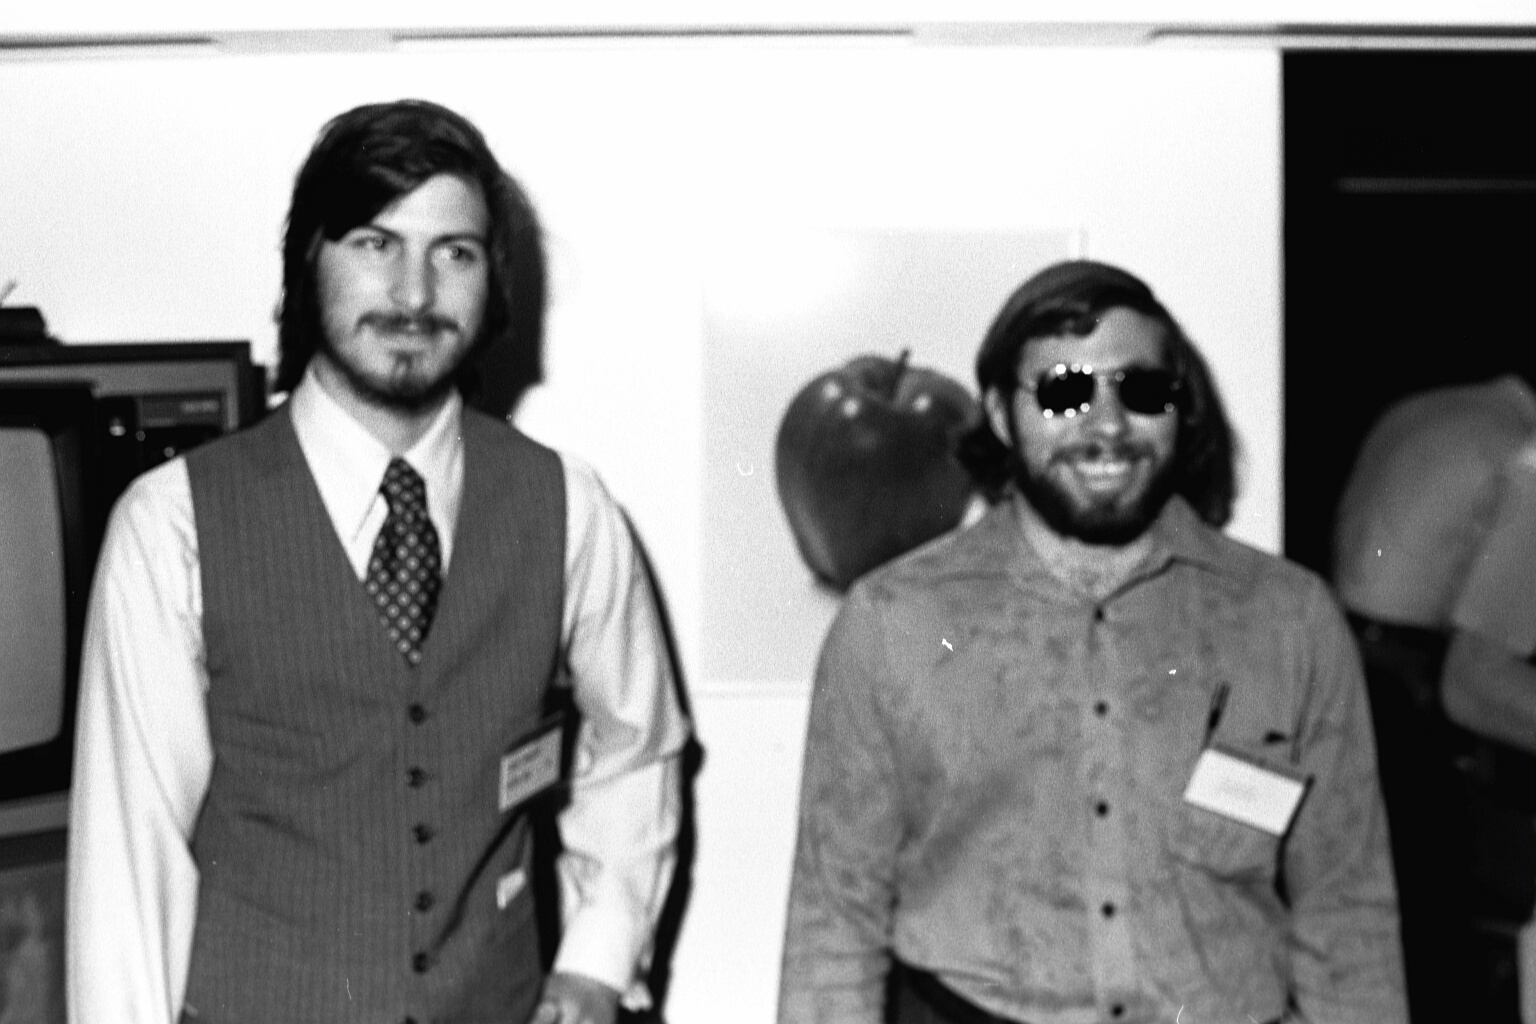 Woz เผย พนักงานใน Apple เคยสาบานว่าจะไม่ขอร่วมงานกับ Steve Jobs อีก (ในอดีต)